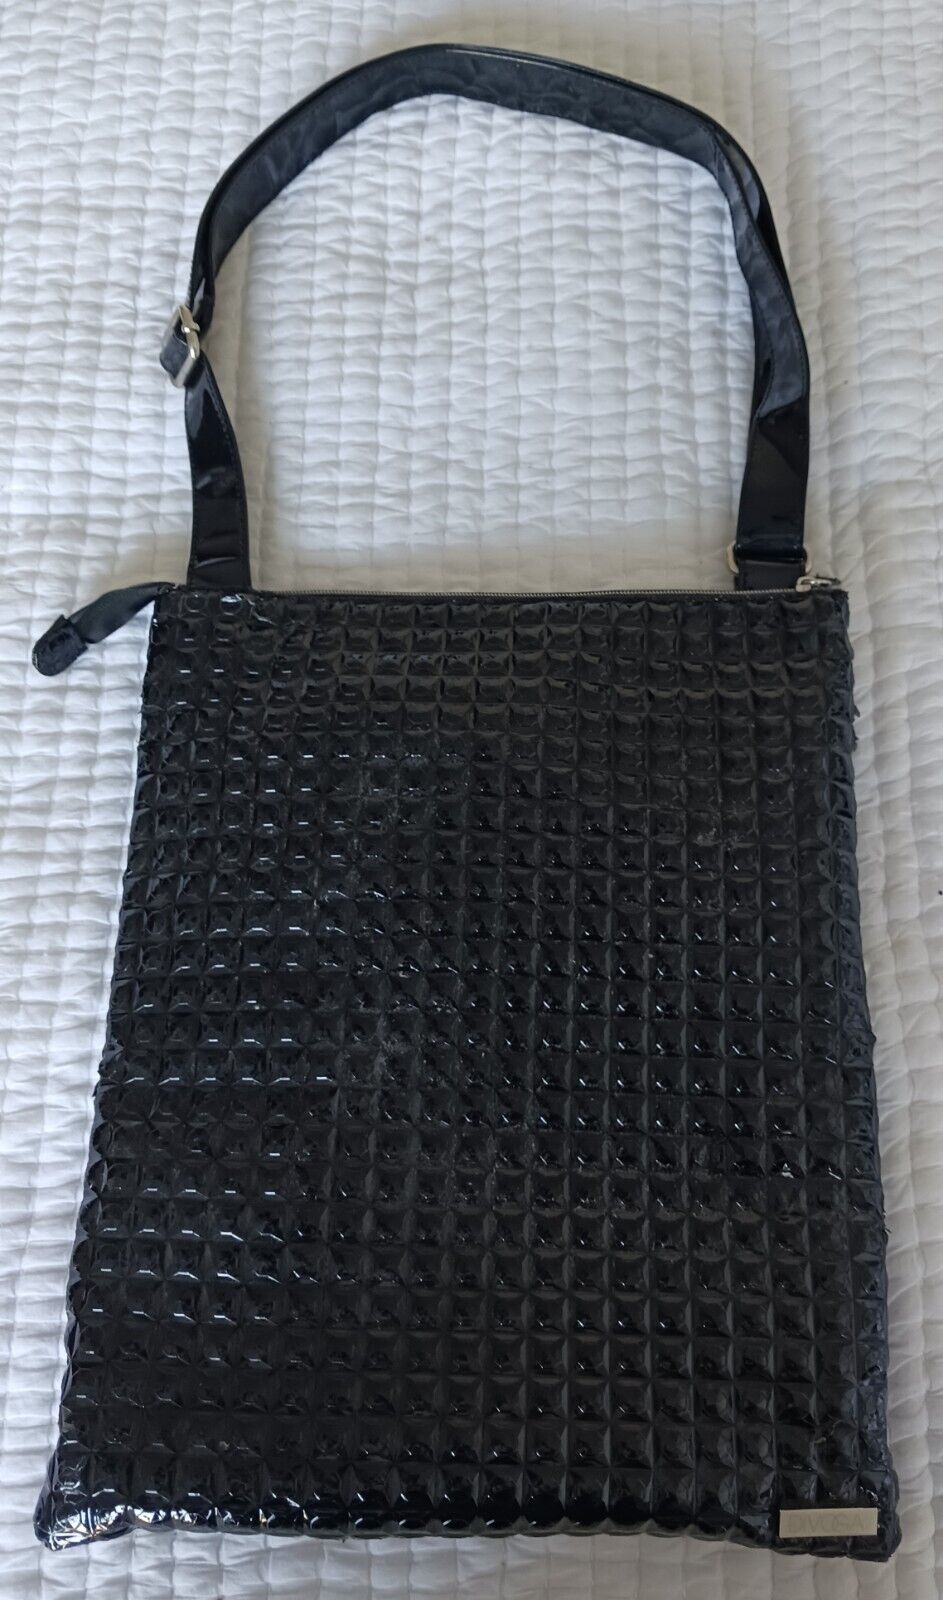 DiVOGA Black Shiny Vegan Leather Laptop/Tablet Shoulder Bag with Purple Lining